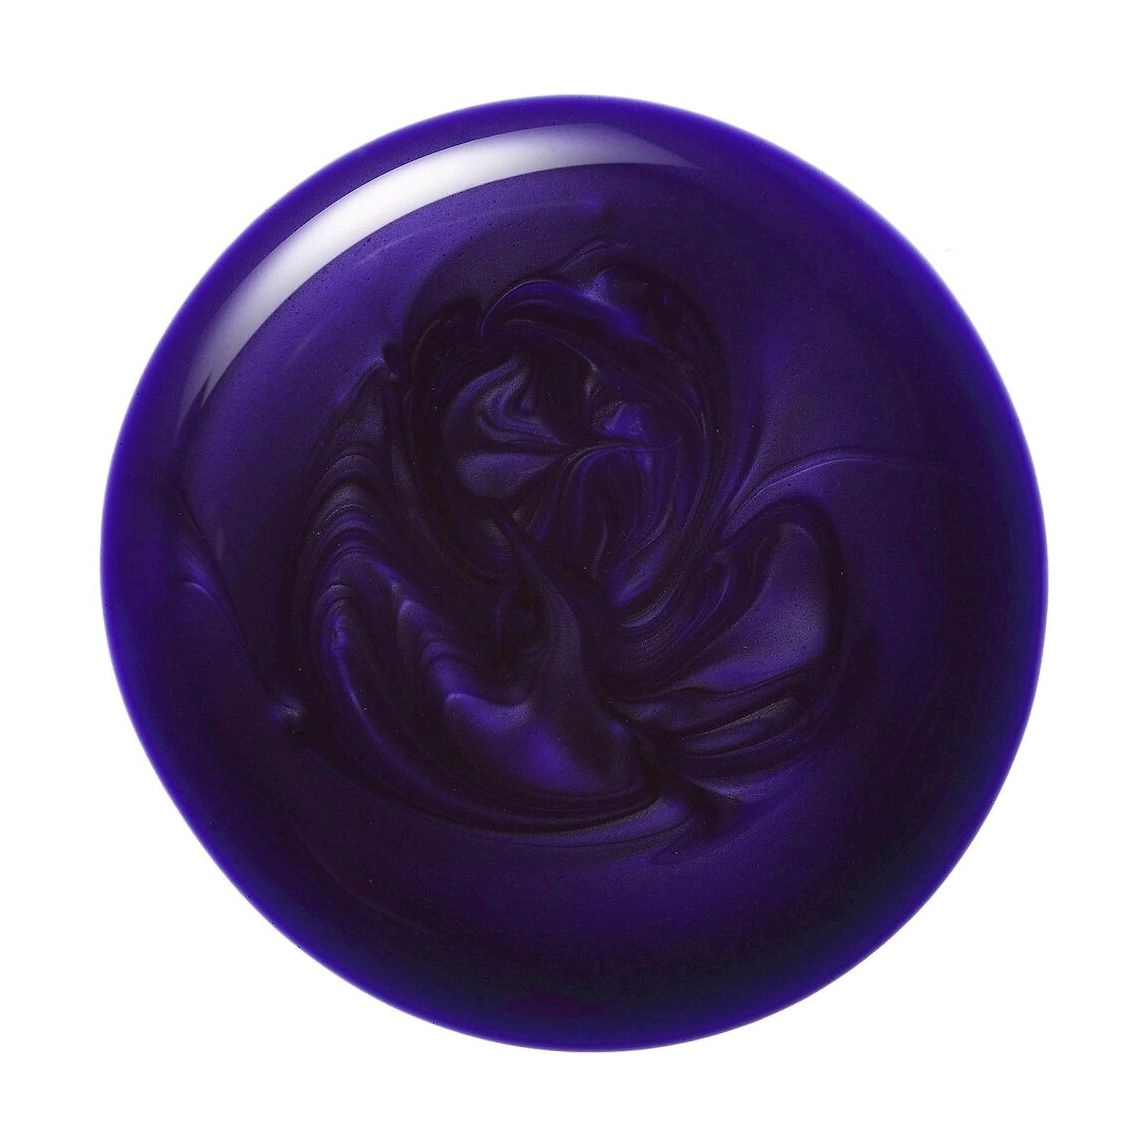 Тонуючий шампунь для волосся з фіолетовим пігментом - Moroccanoil Blonde Perfecting Purple Shampoo, 200 мл - фото N2